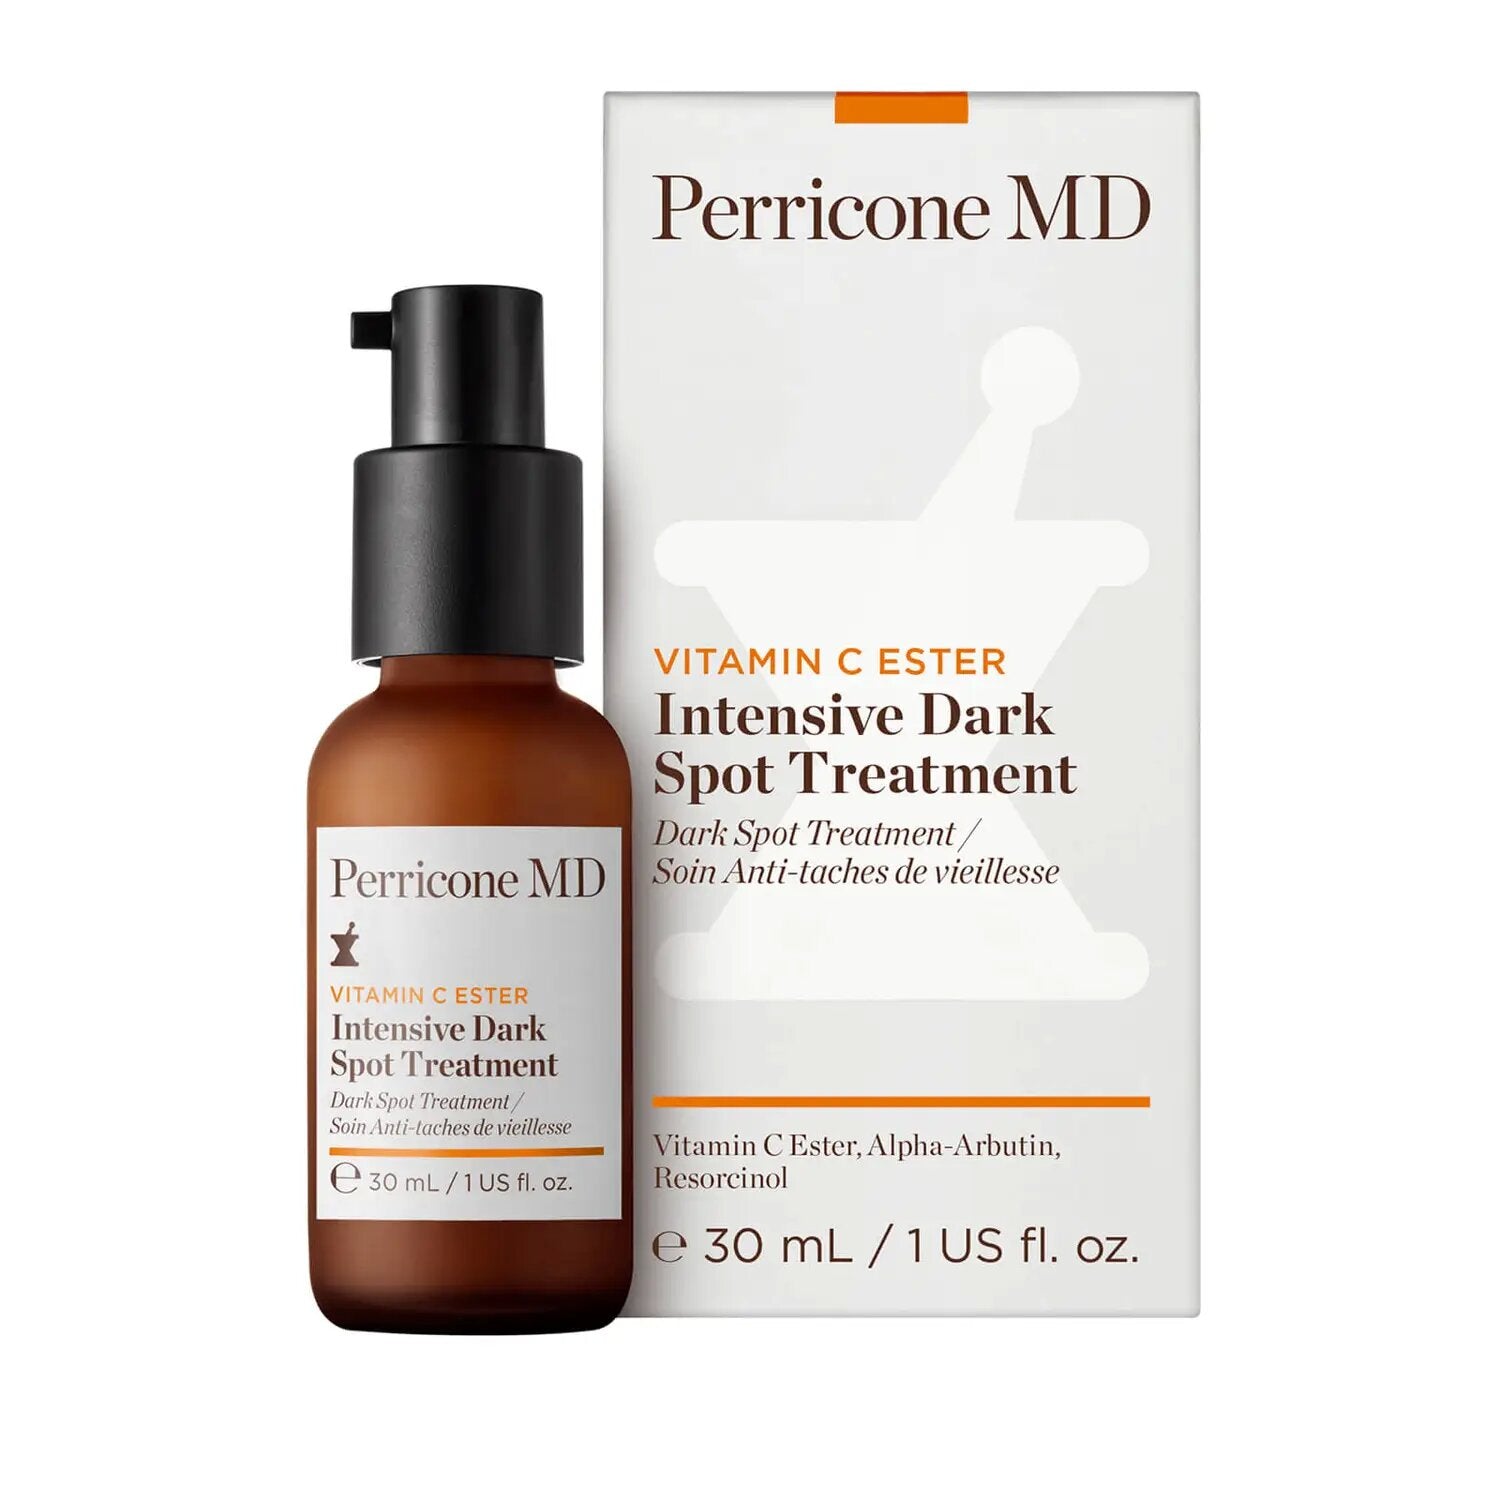 Perricone MD Vitamin C Ester Intensive Dark Spot Treatment 1 oz / 30 ml